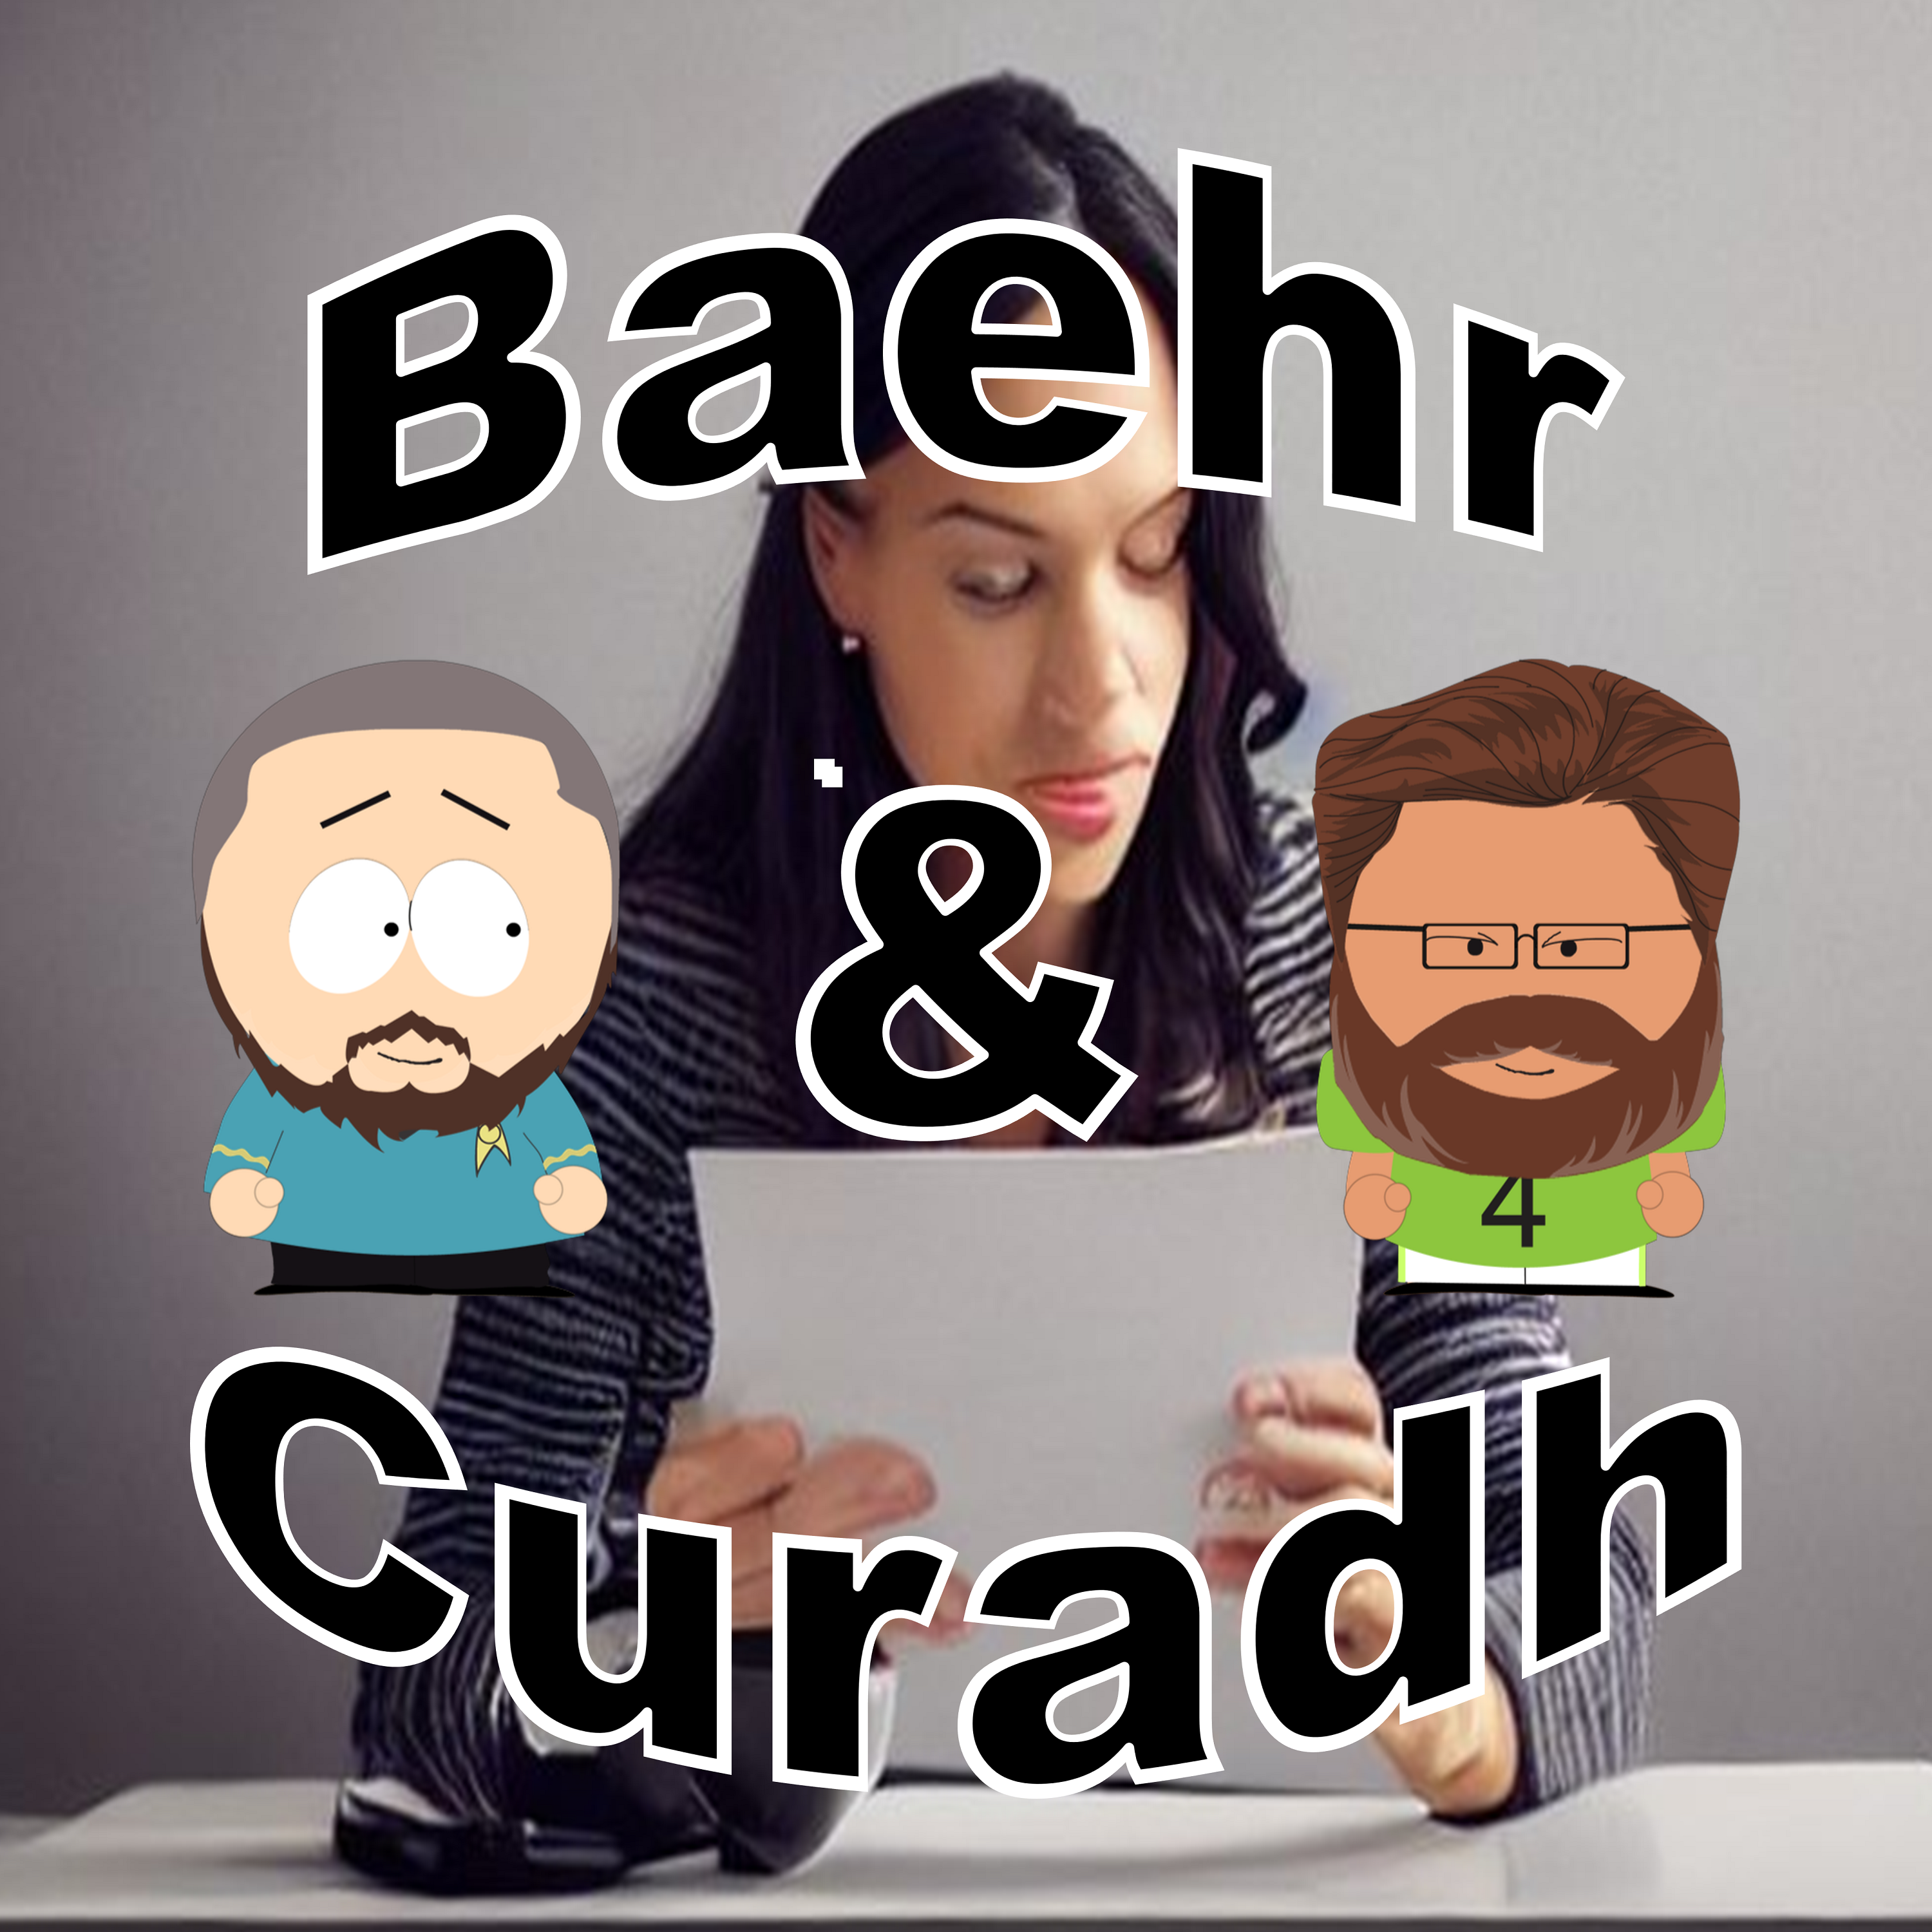 Baehr and Curadh